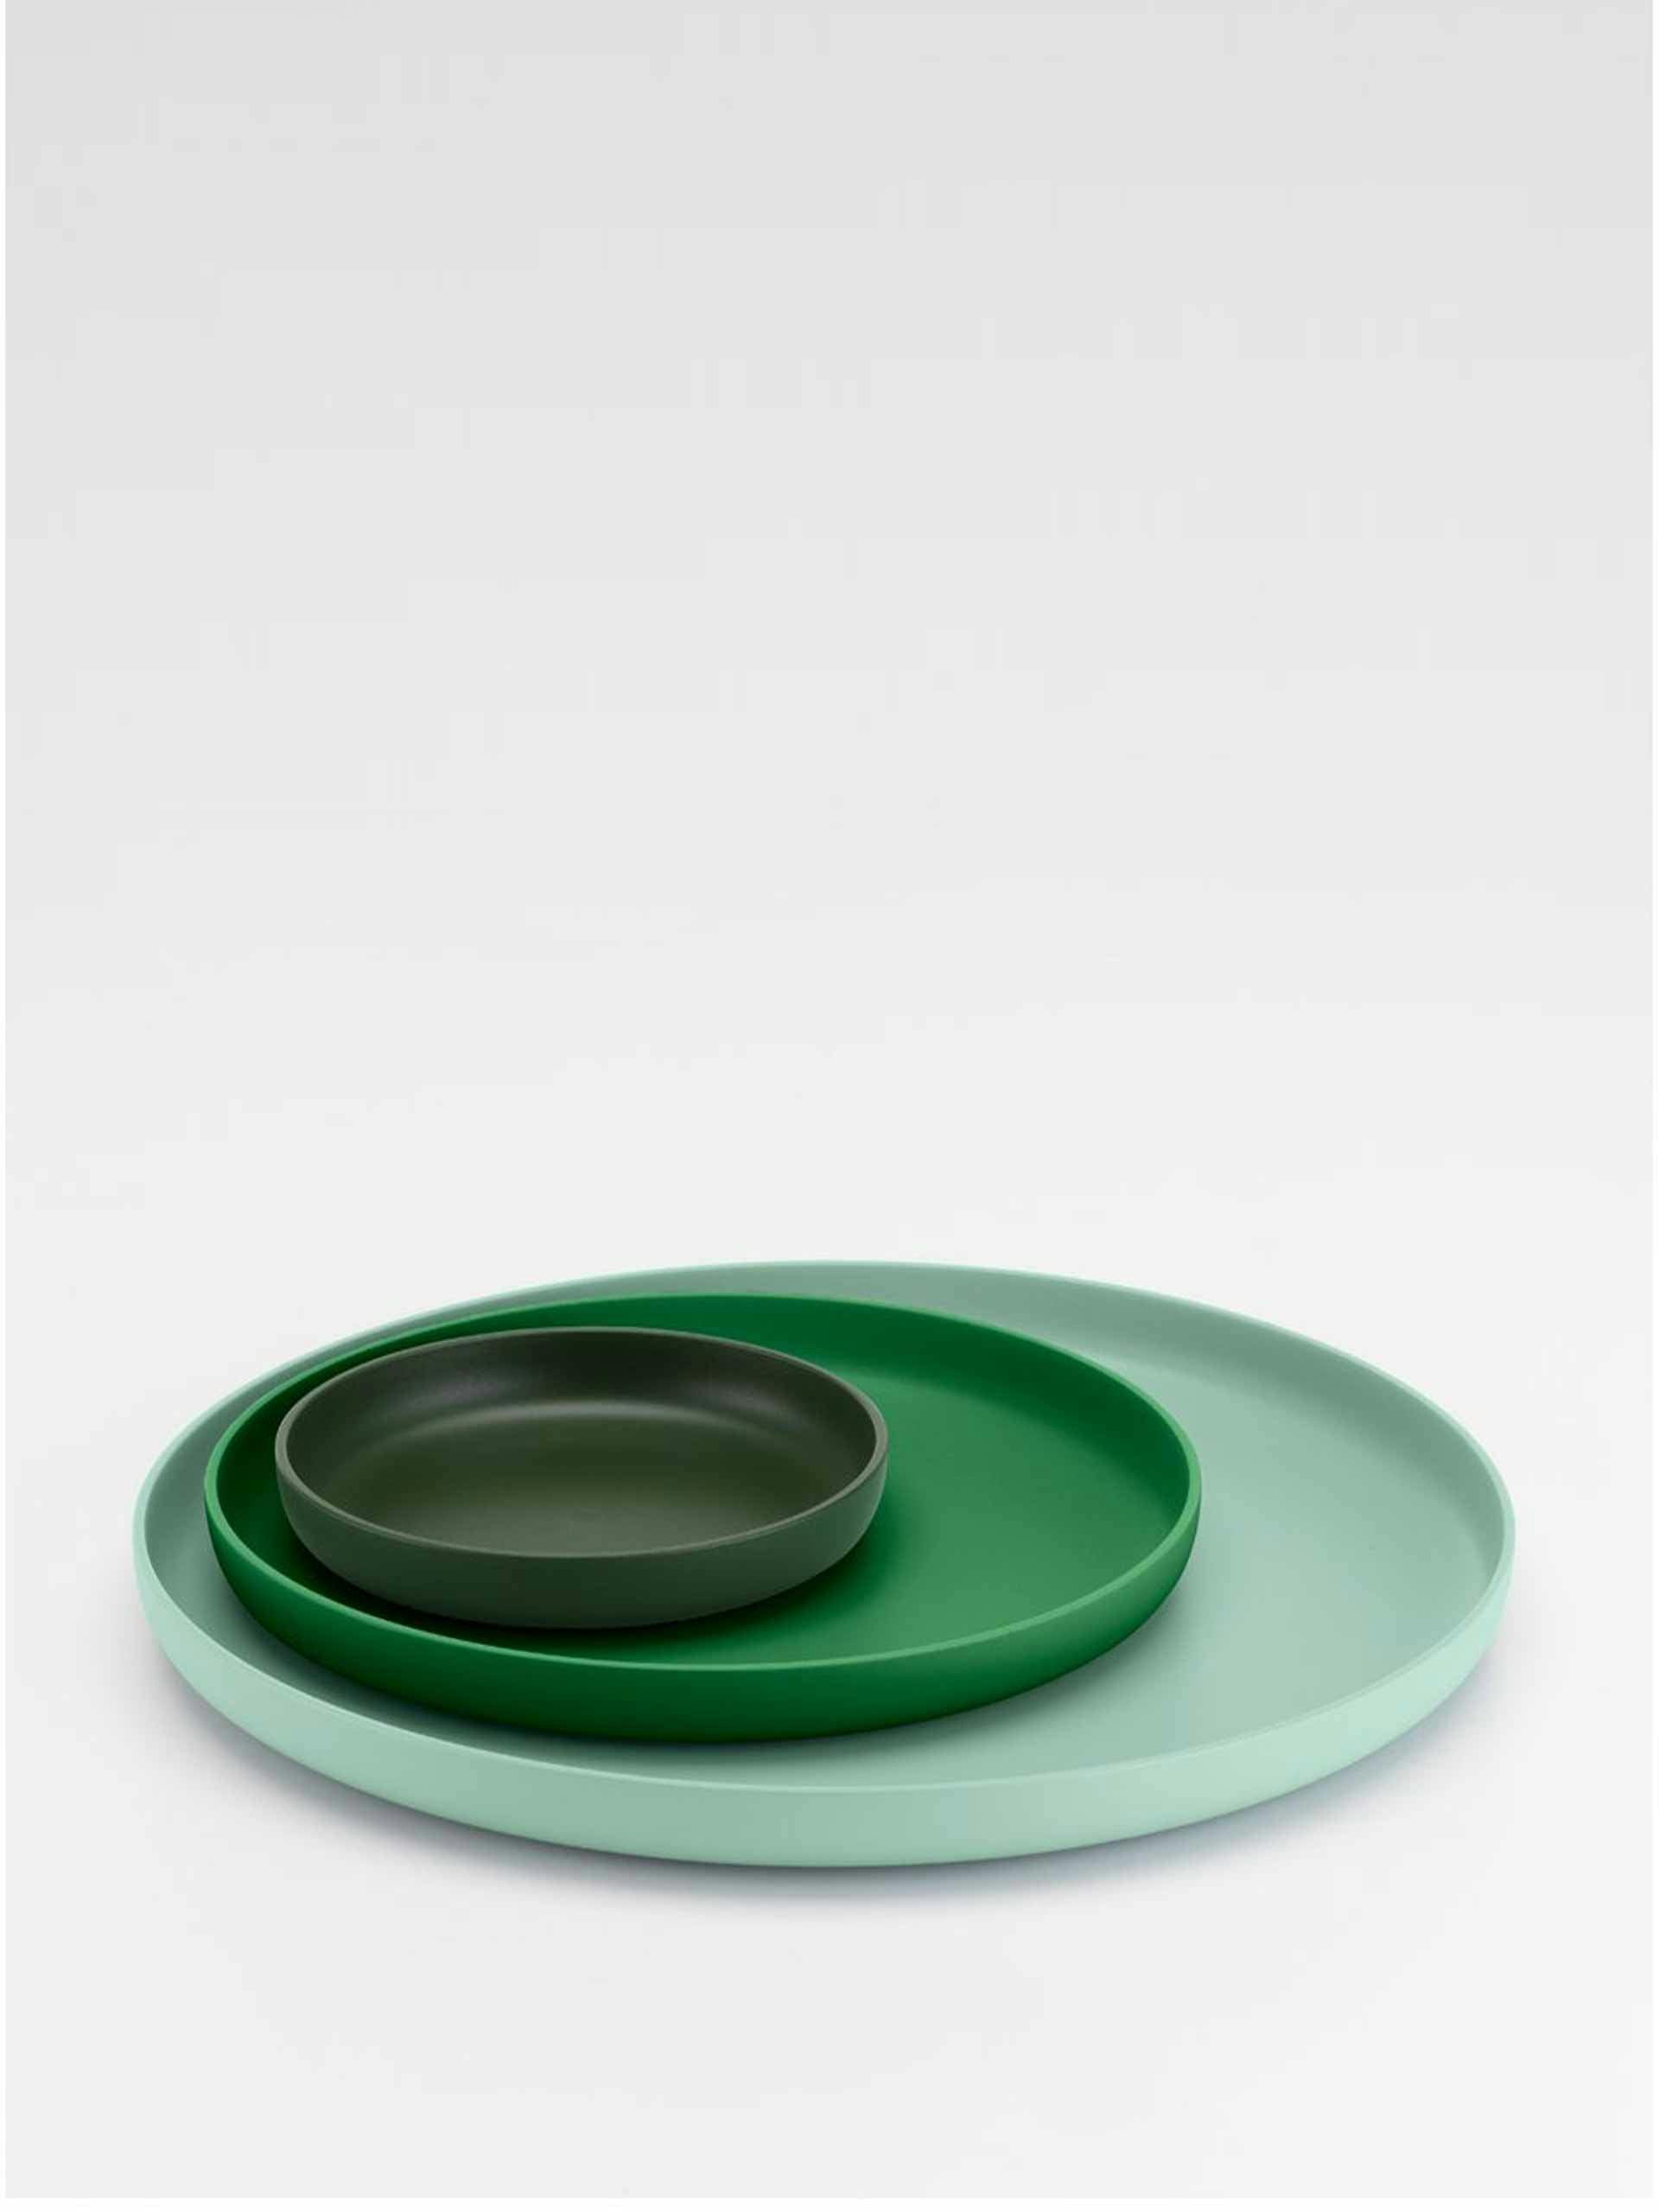 Green plate set